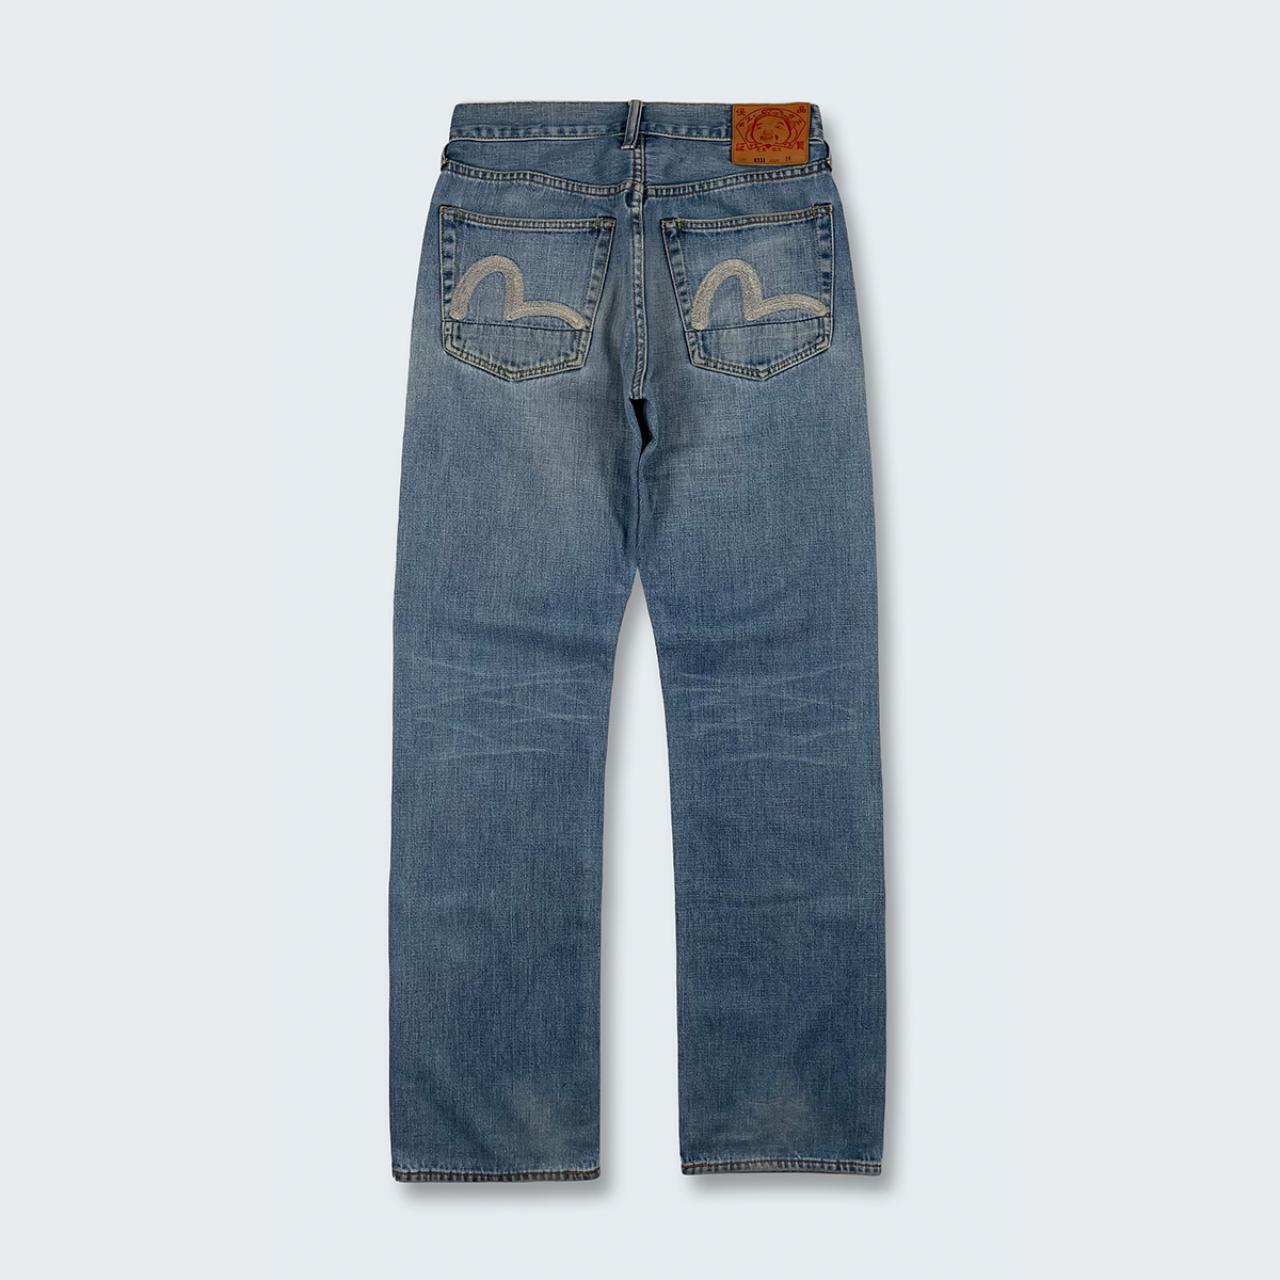 Authentic Vintage Evisu Jeans  (29")